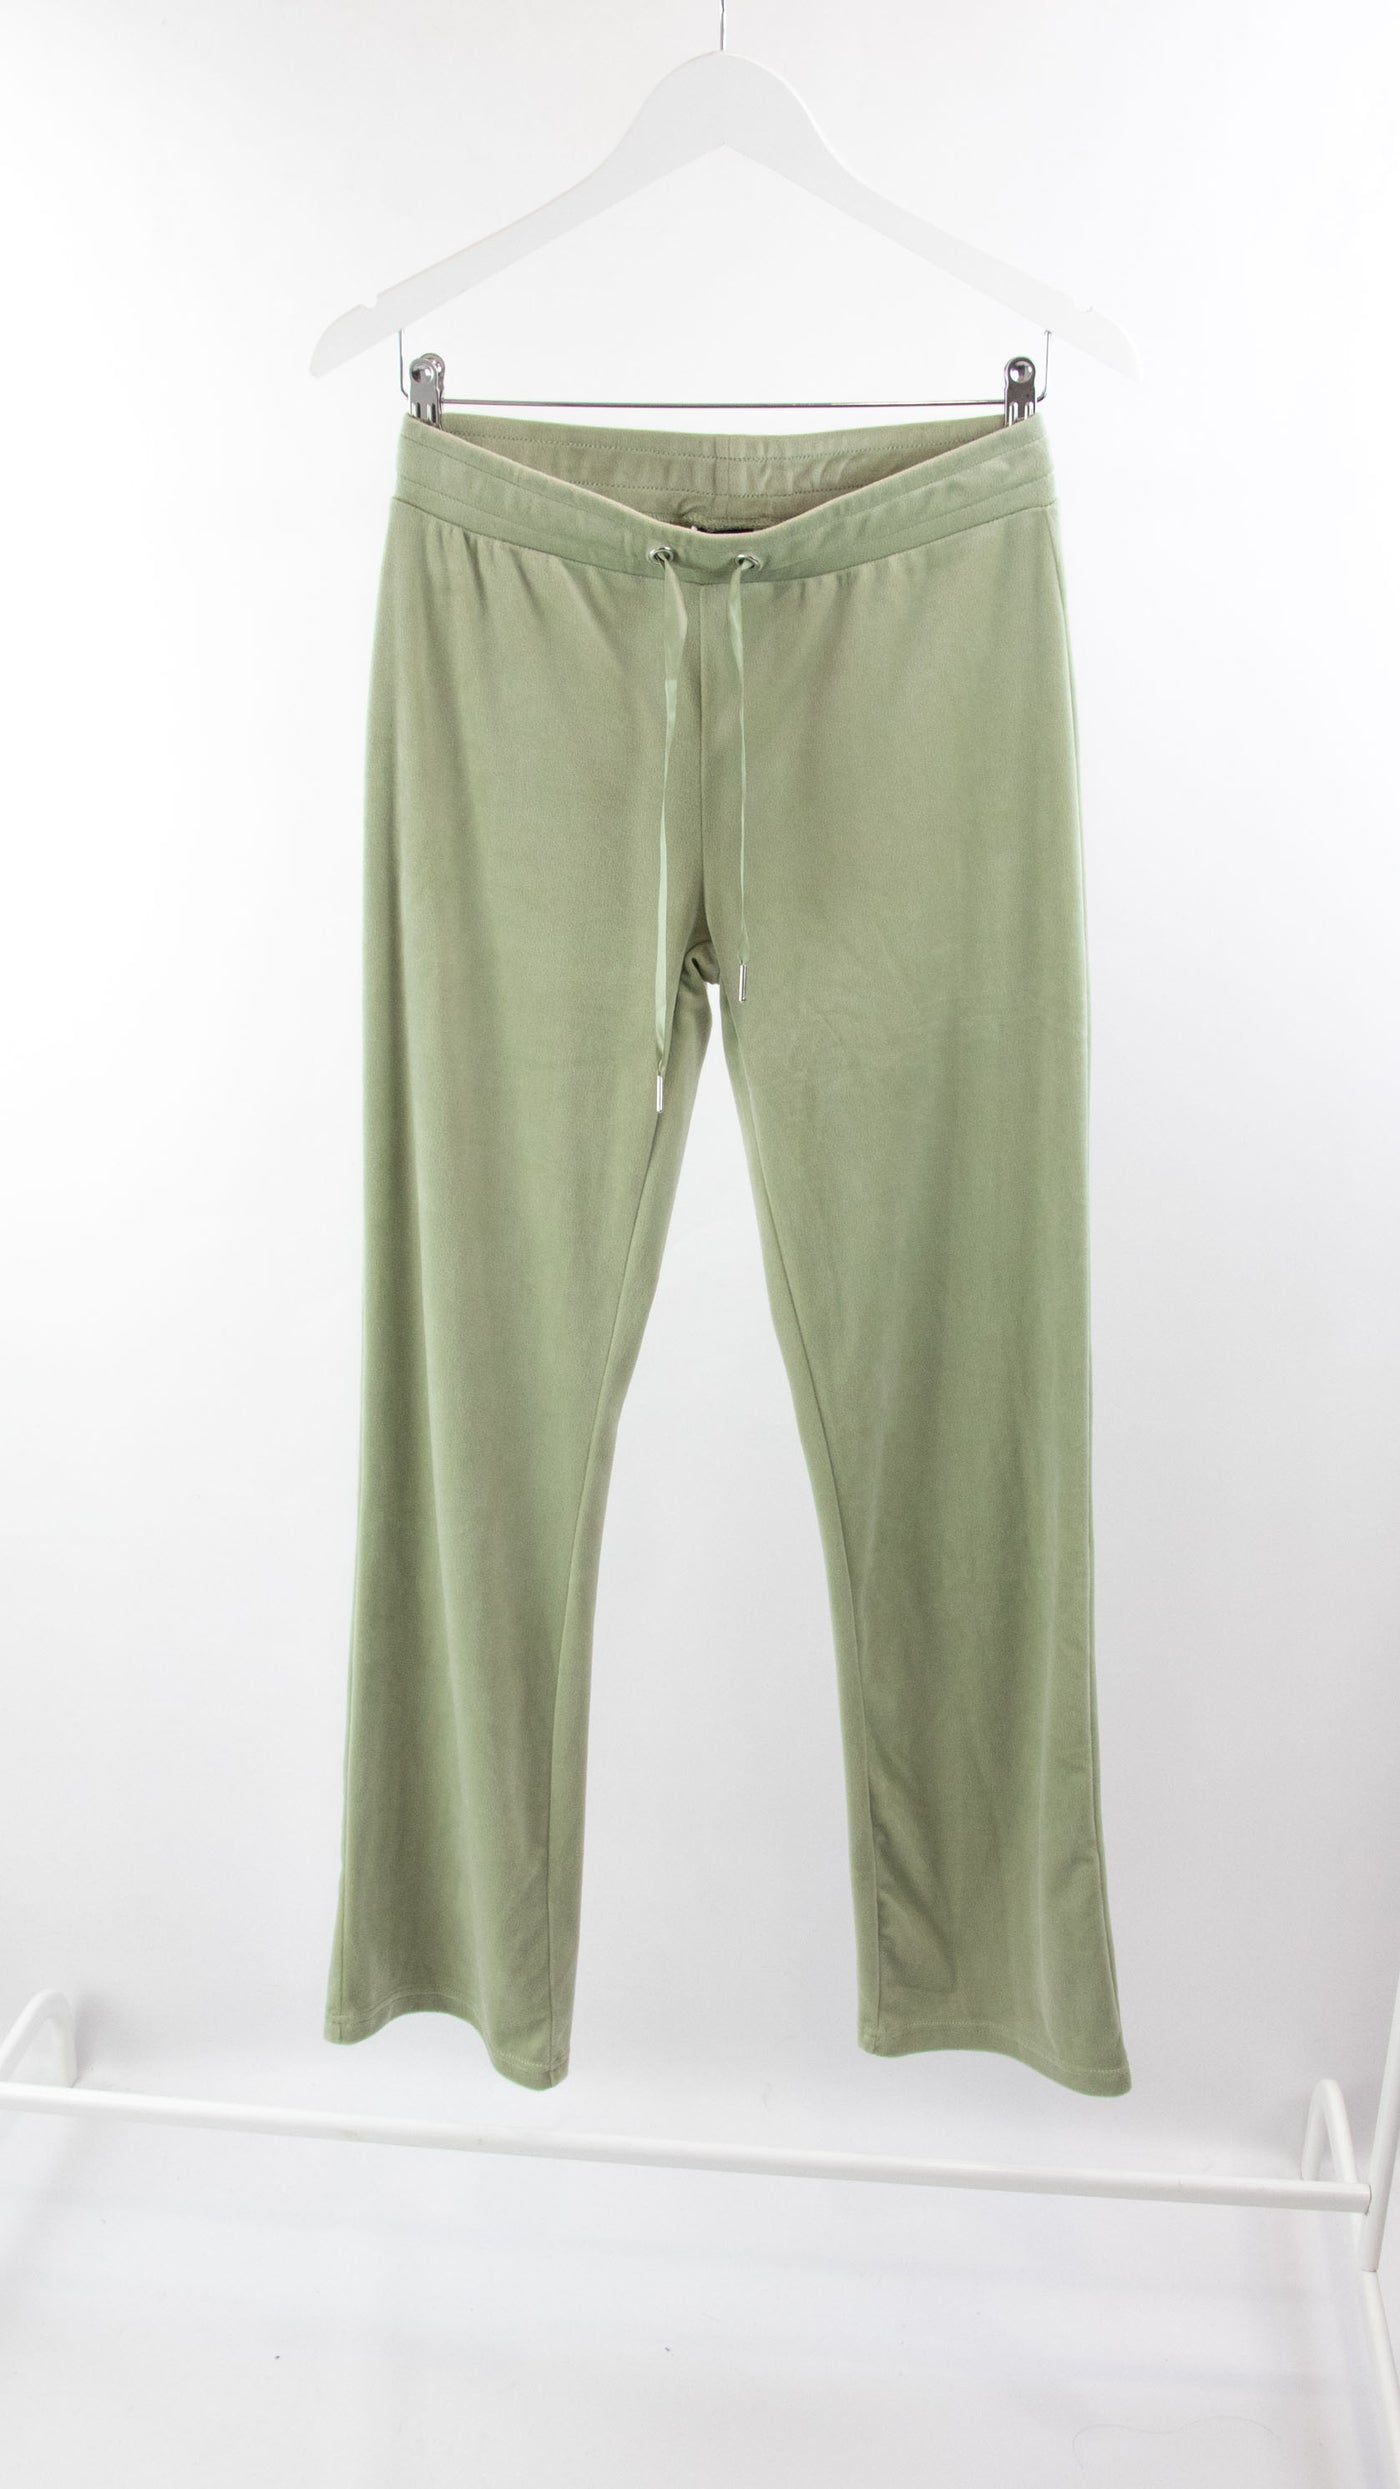 Pantalón verde terciopelo